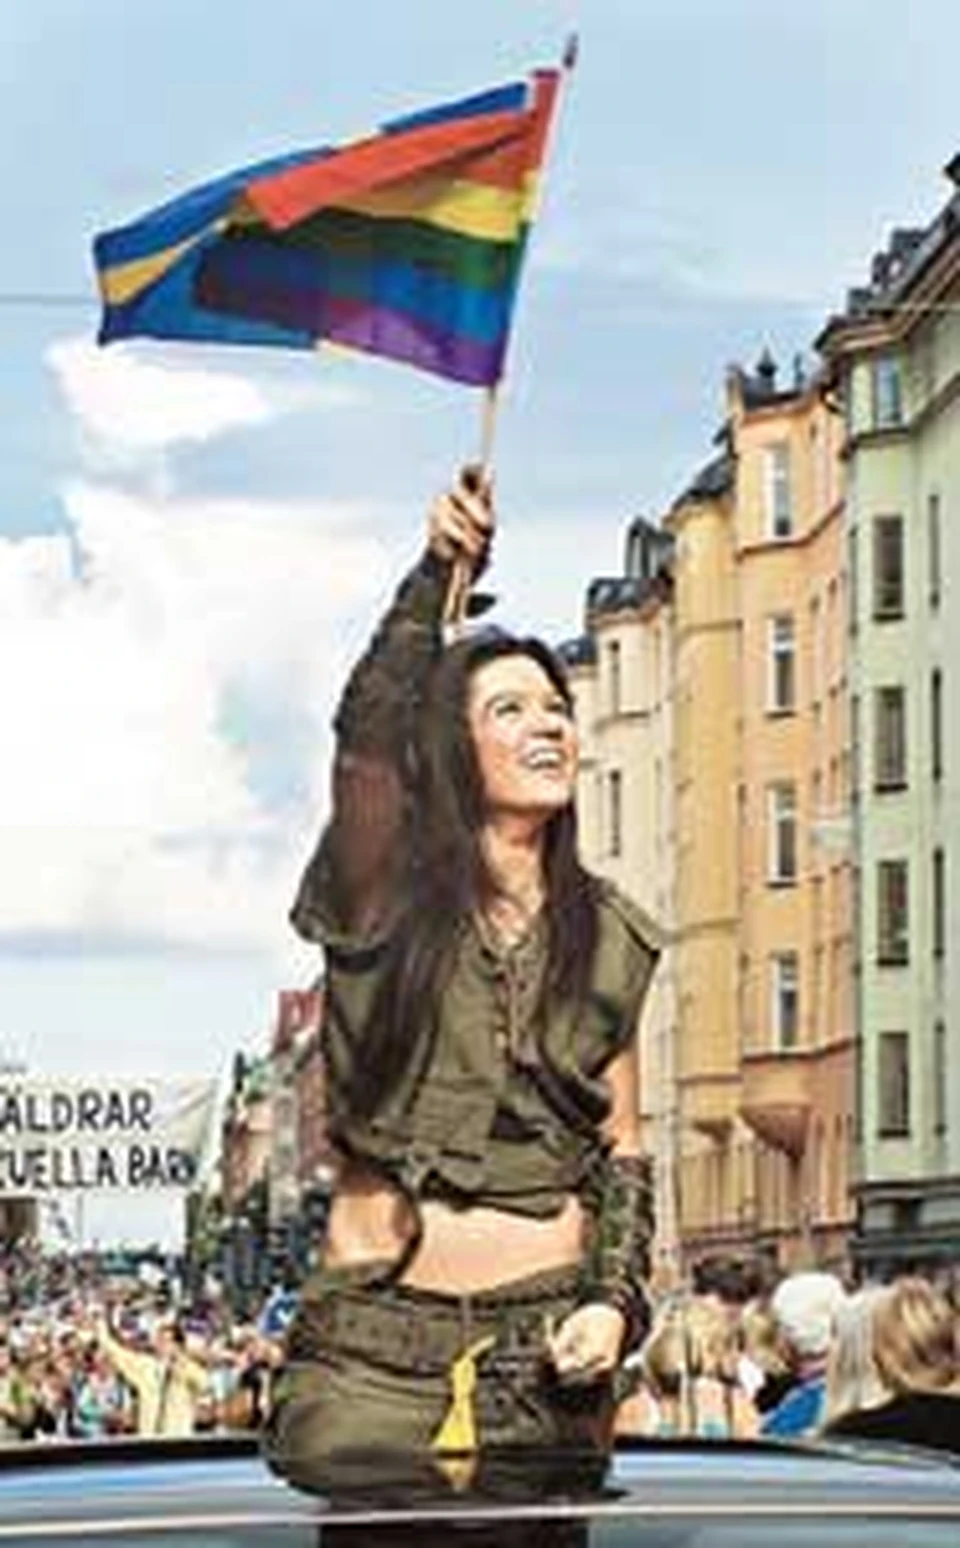 Проехав во главе парада, Руслана размахивала двумя флагами: желто-синим шведским и радужным фестивальным.